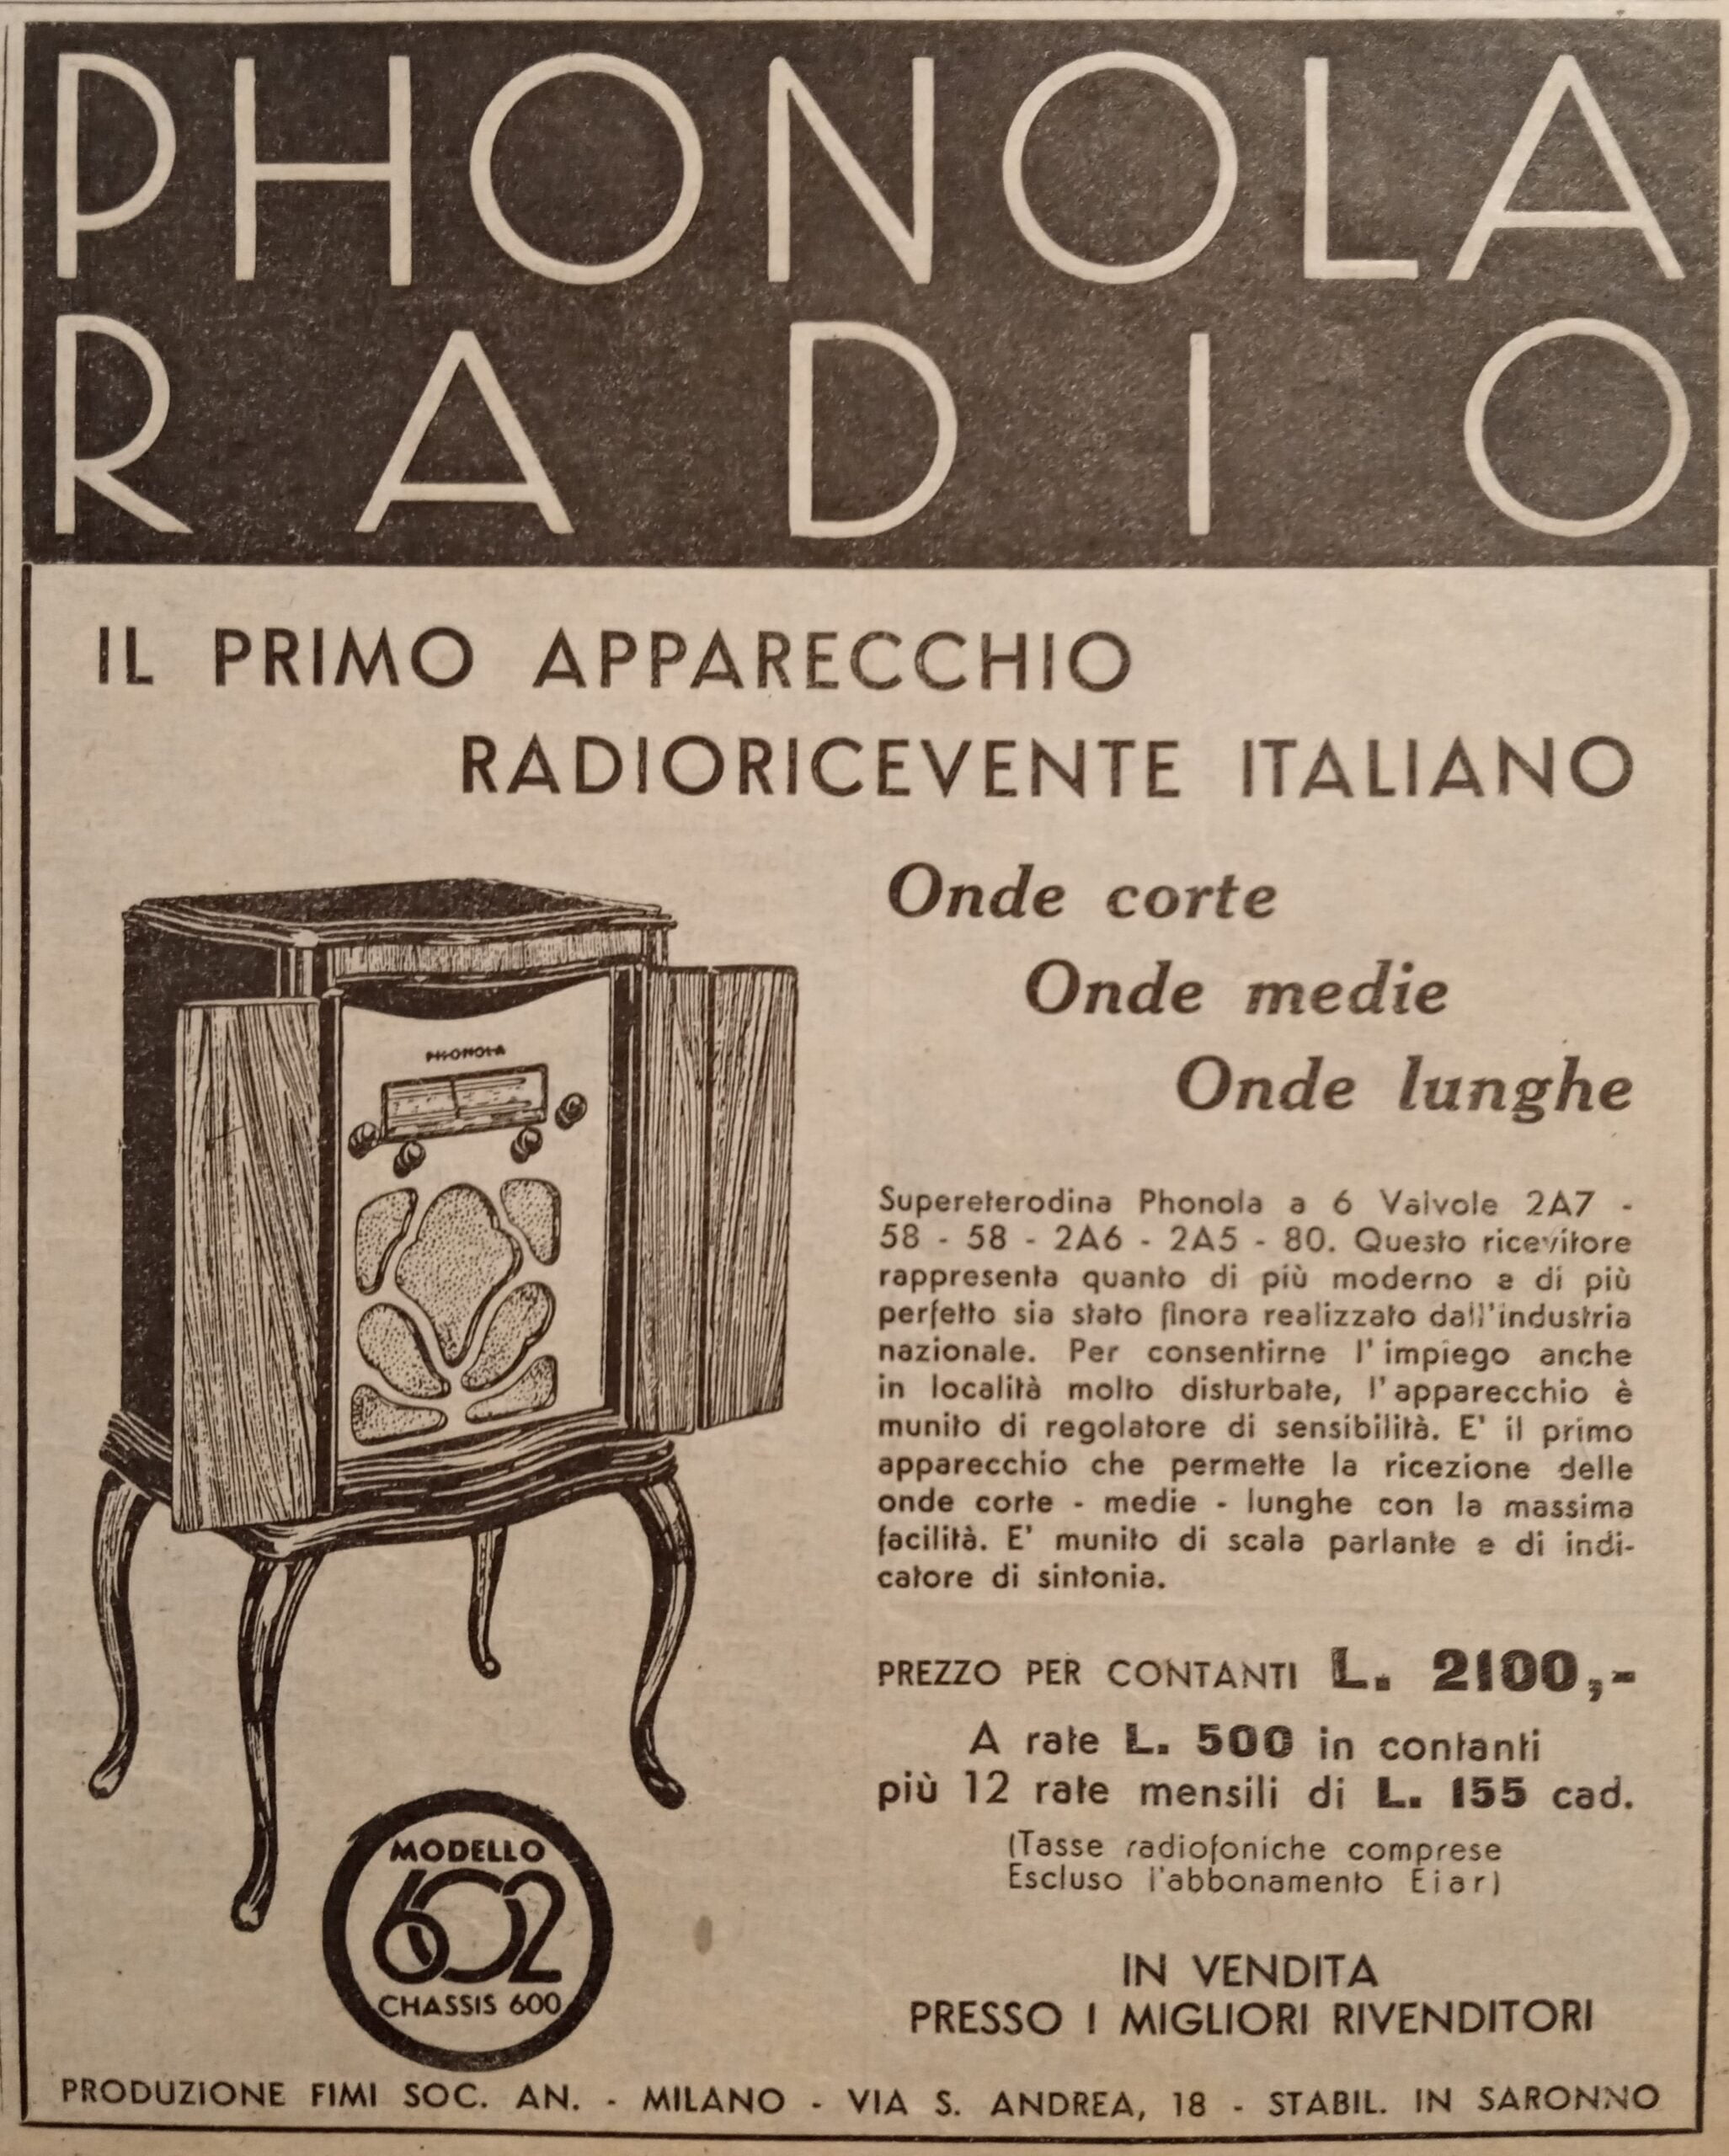 Phonola Radio